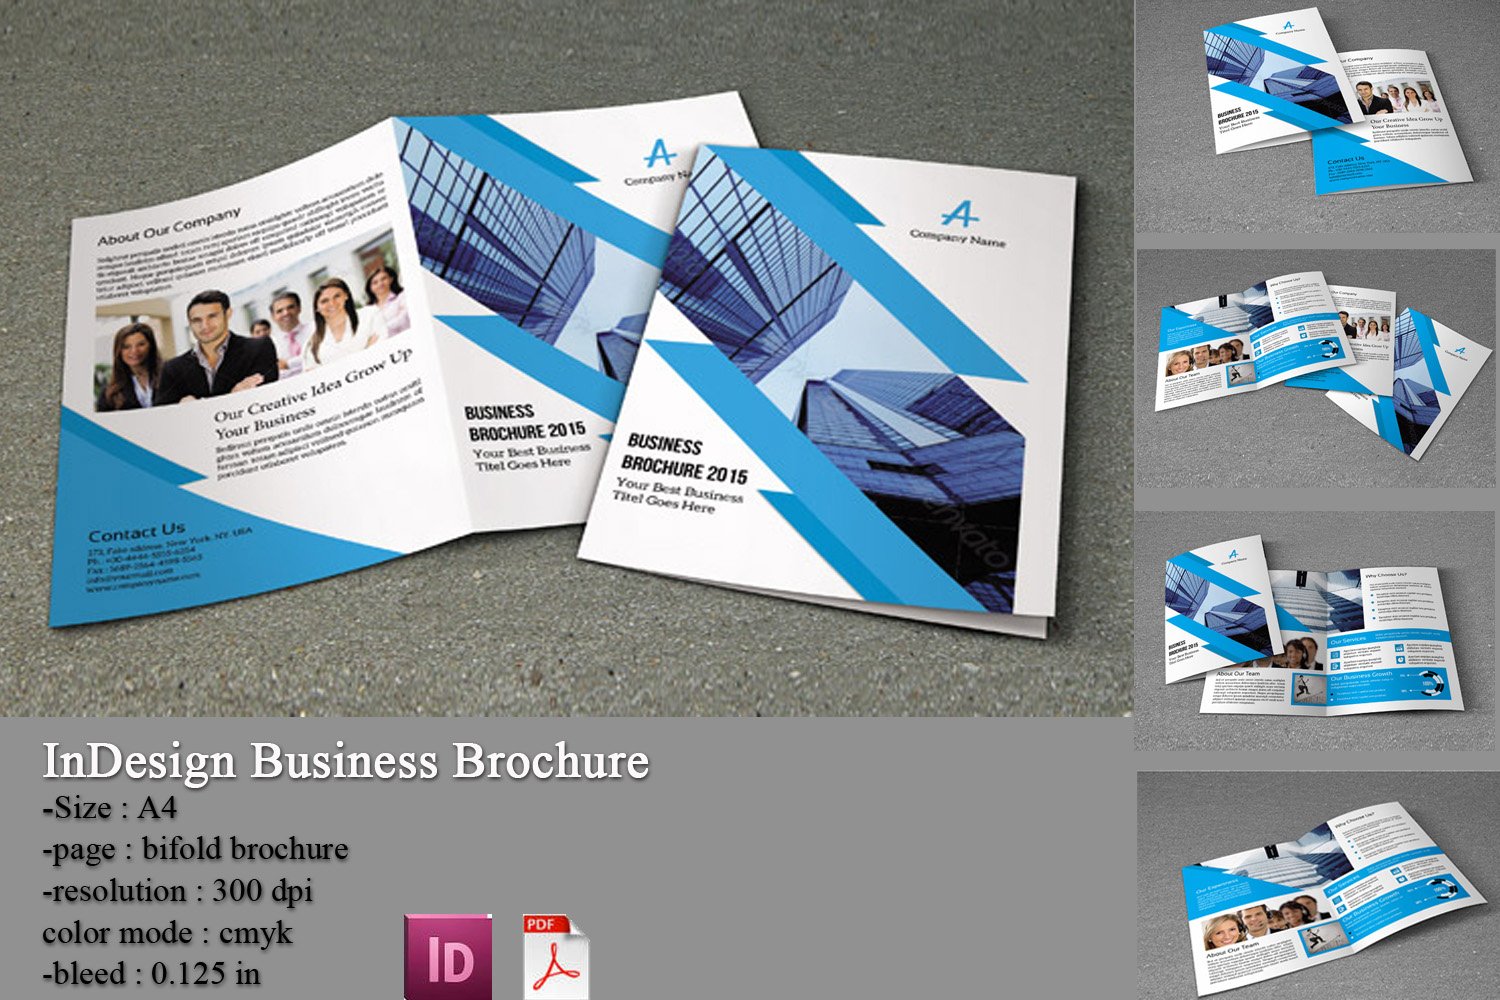 InDesign Business Brochure-V154 cover image.